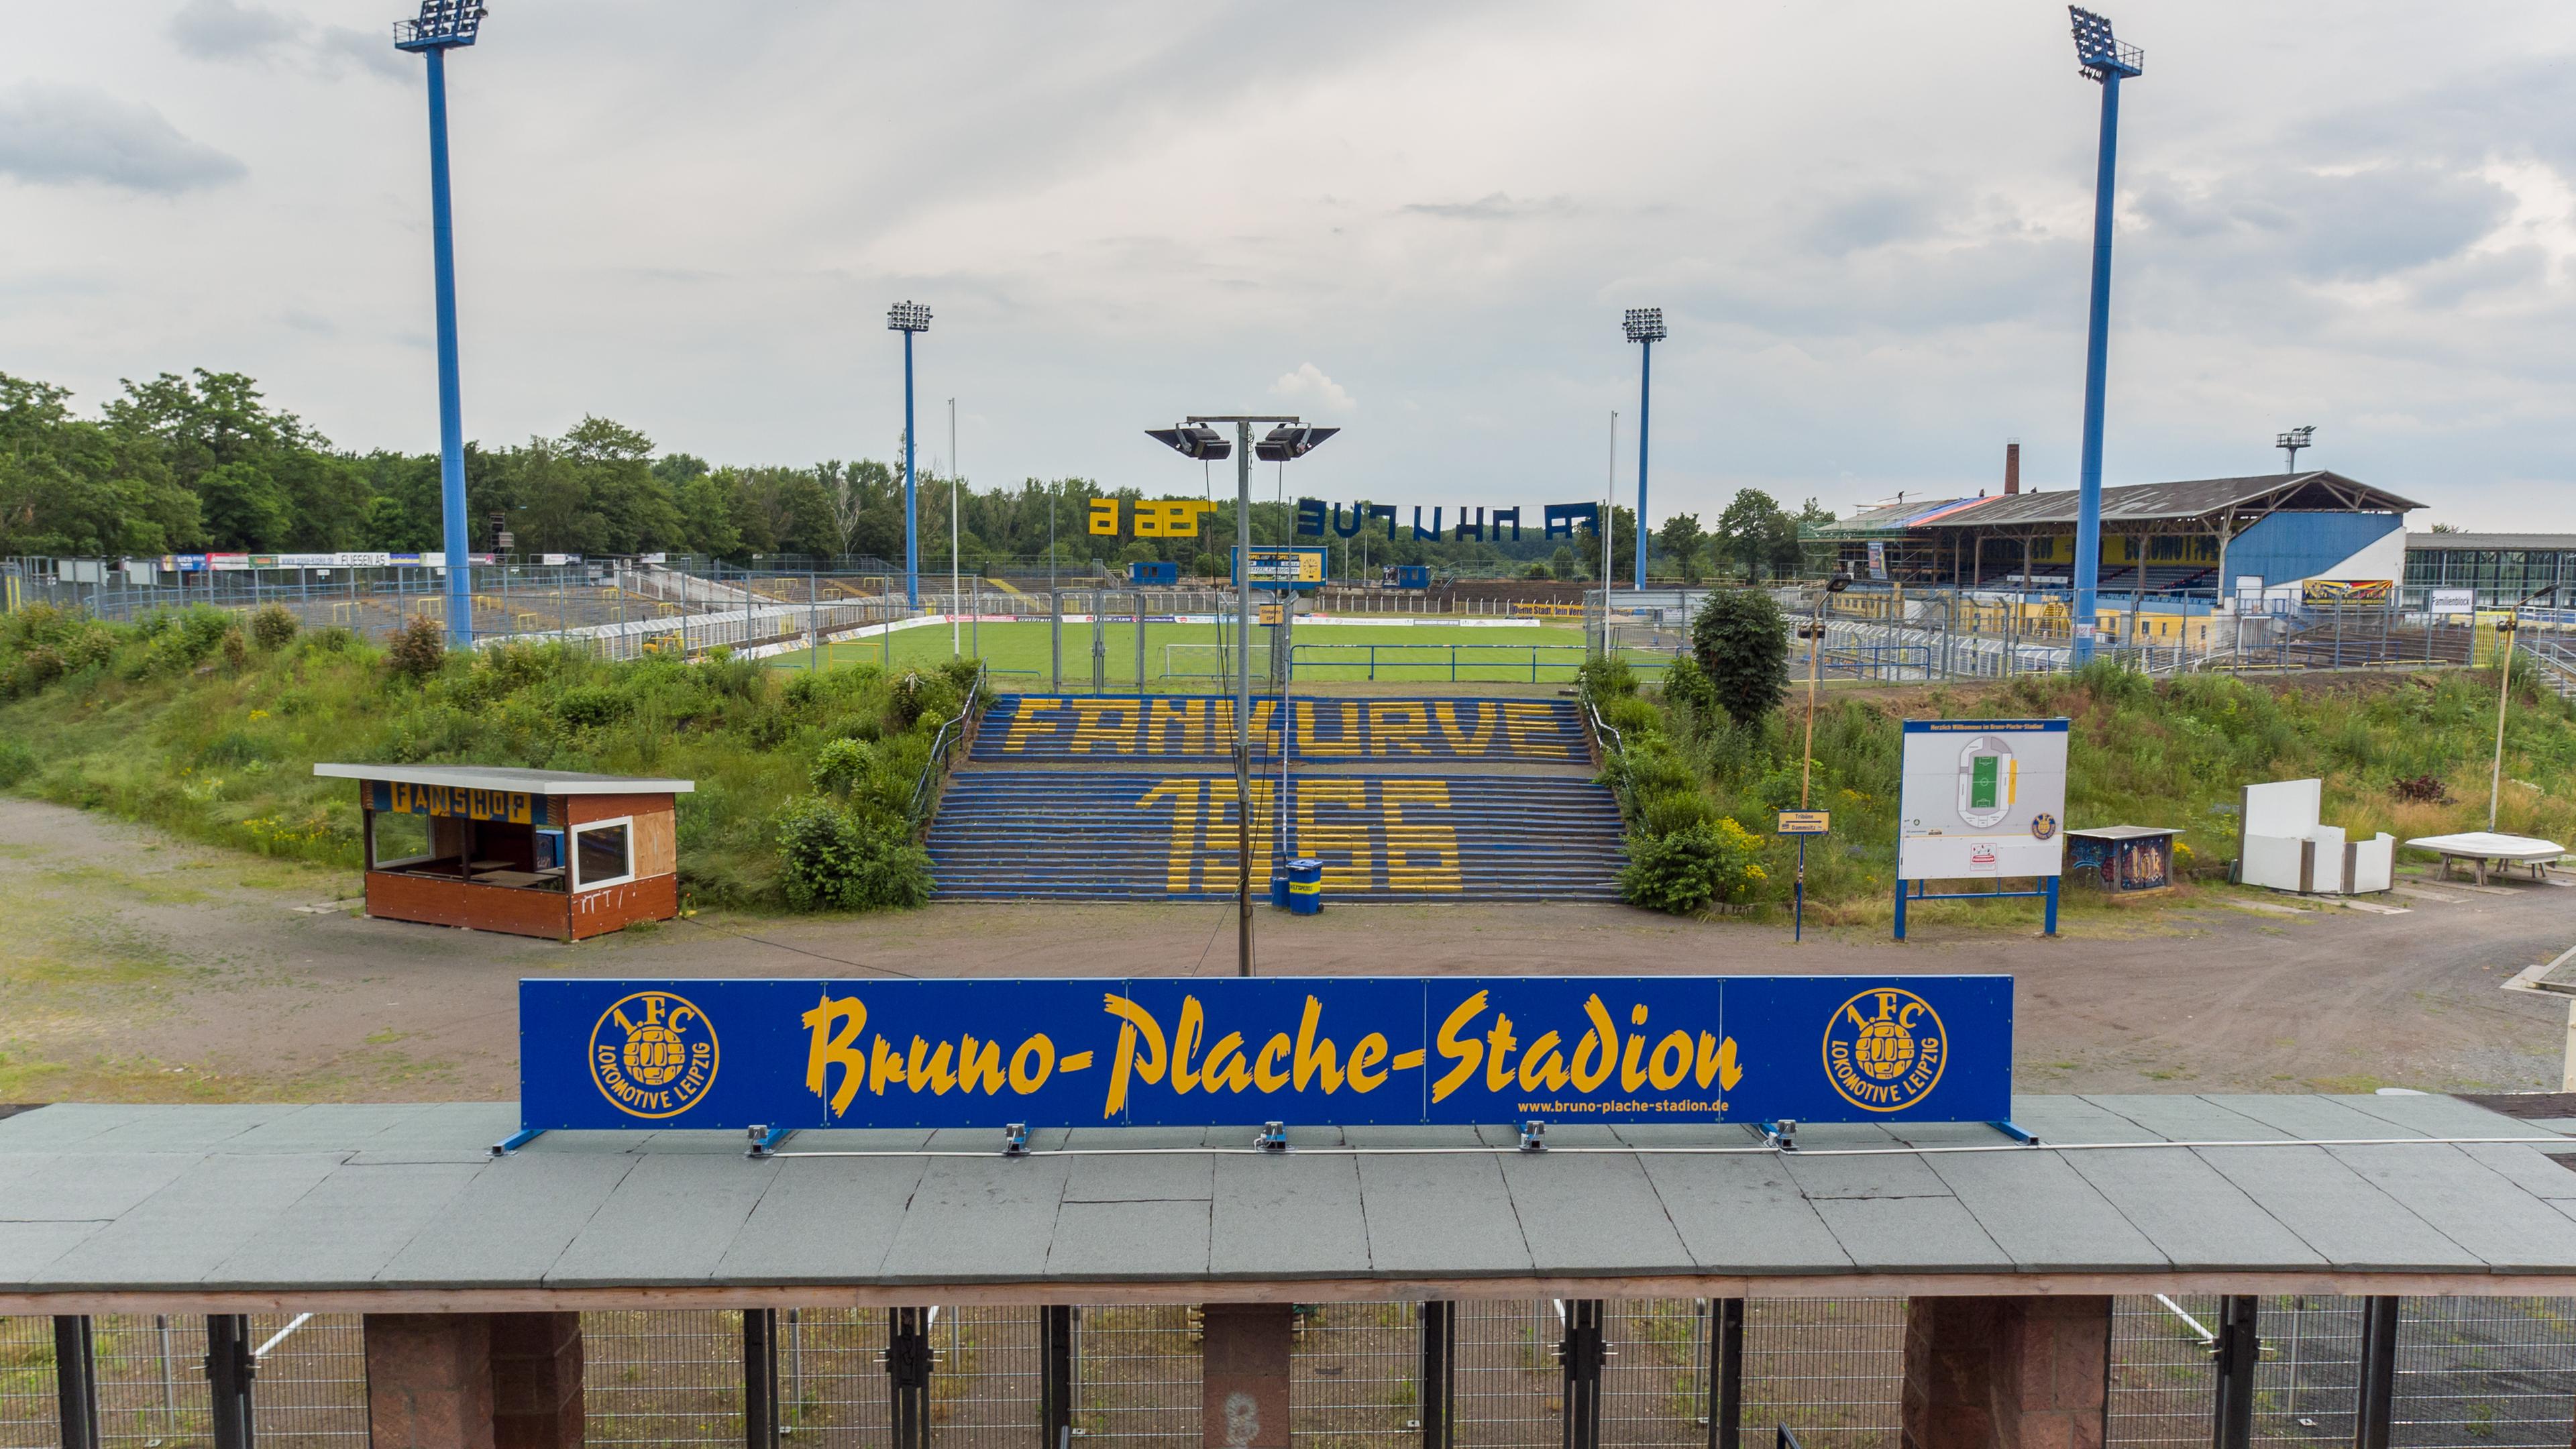 19.06.2020, Leipzig: Der Eingang ins Bruno-Plache-Stadion, Spielstätte des 1. FC Lokomotive Leipzig. 